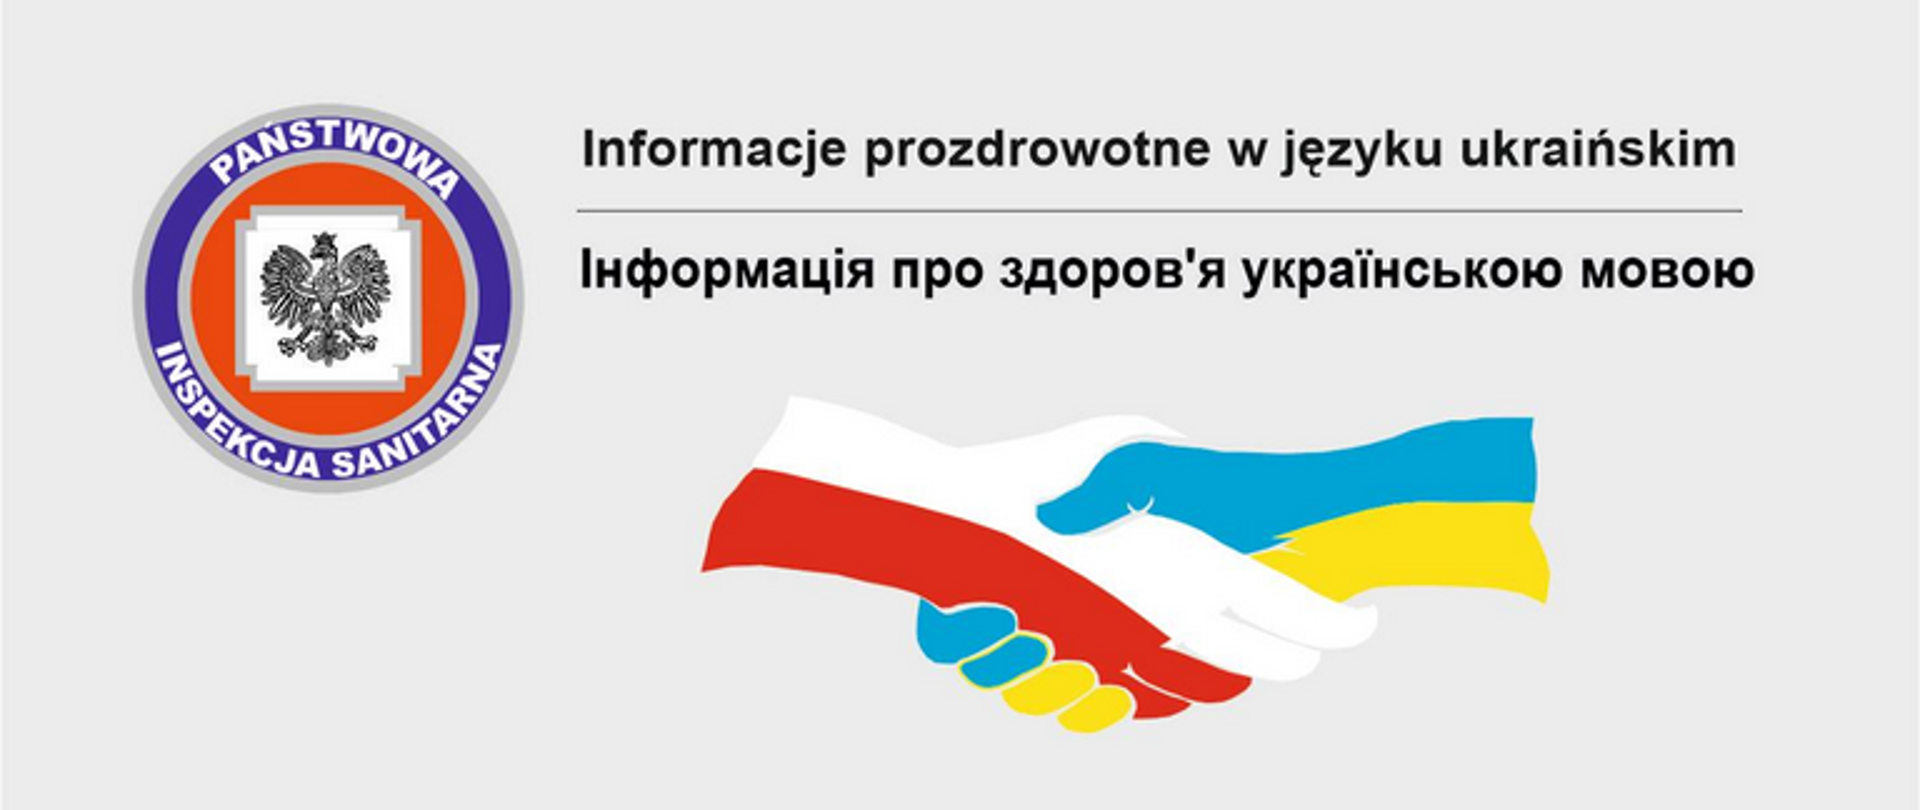 Informacje prozdrowotne w języku ukraińskim